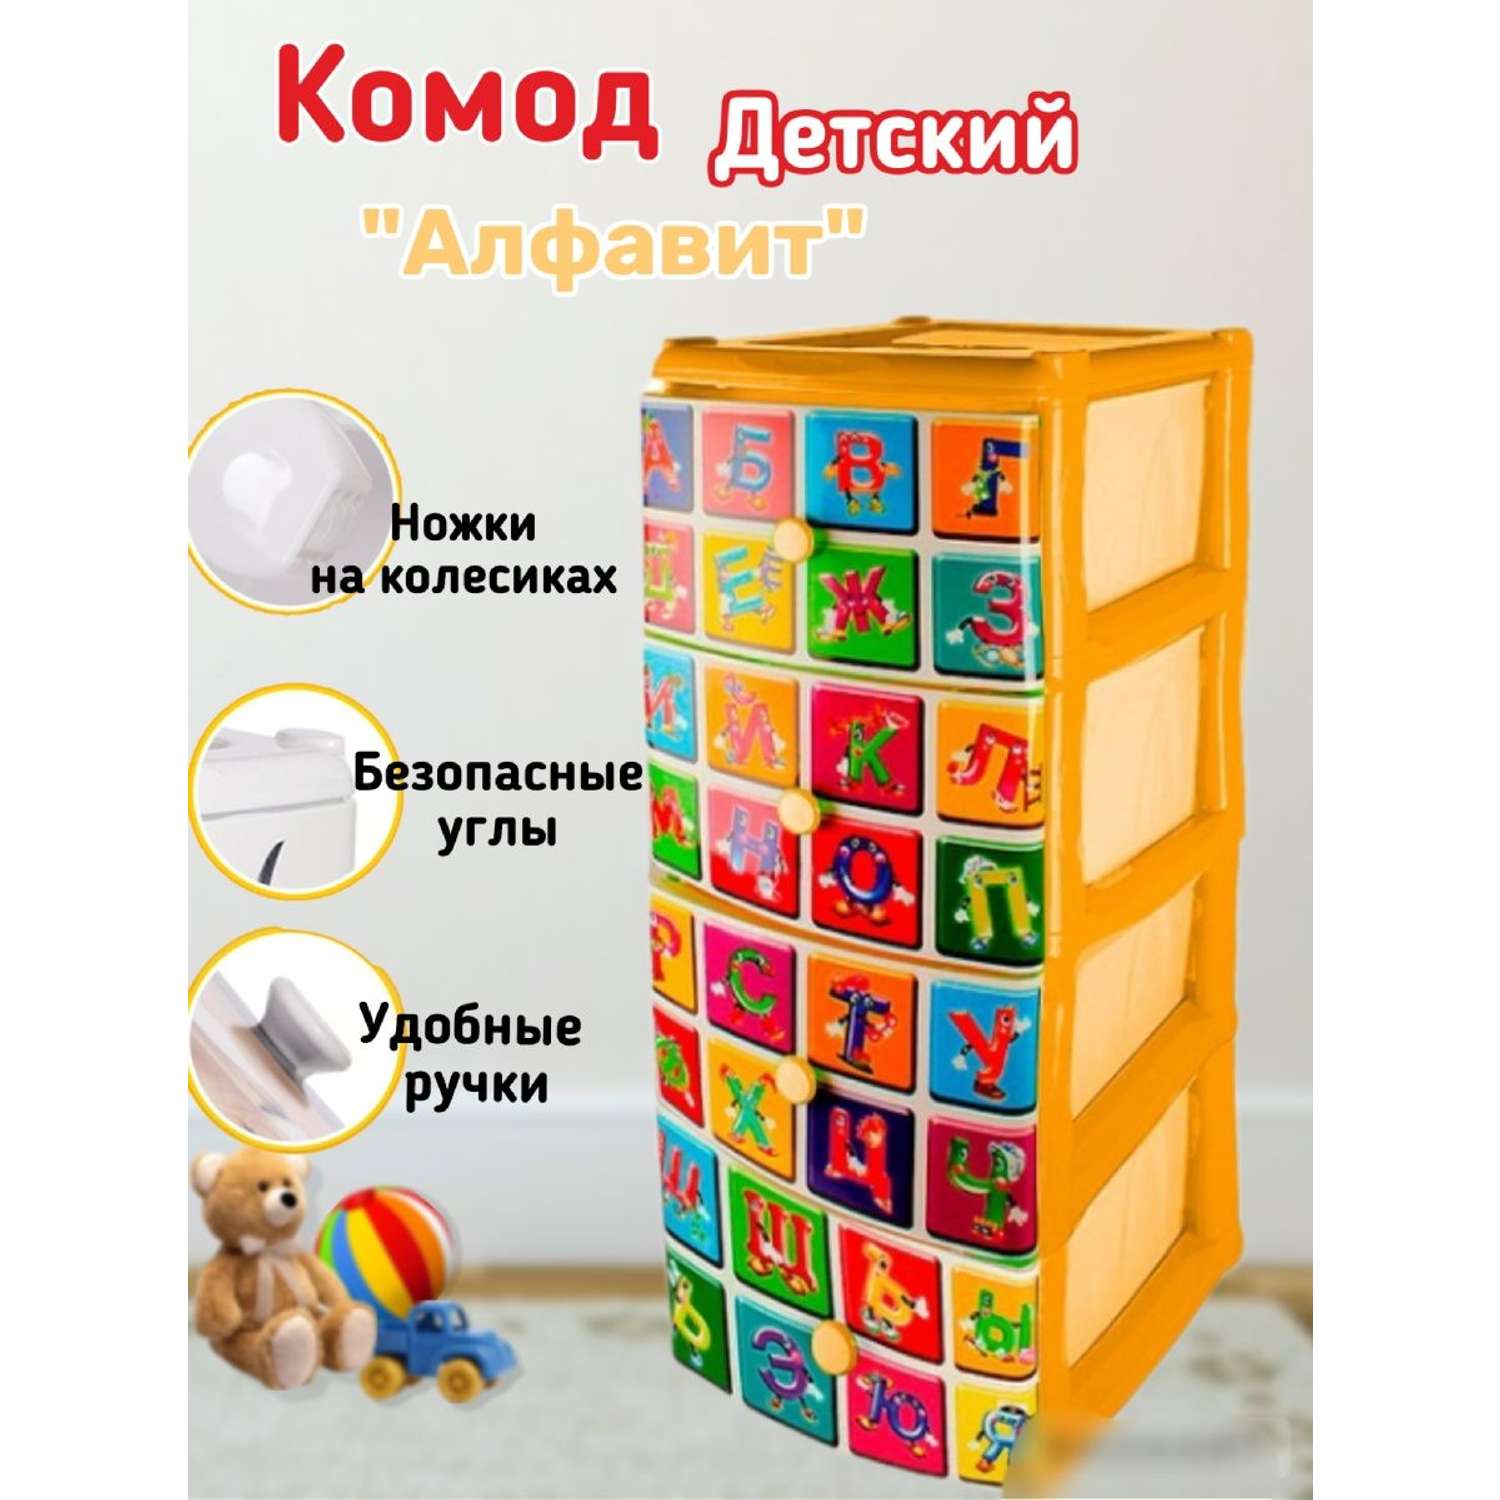 Комод детский пластиковый elfplast Алфавит №3 для игрушек и вещей цвет-солнечно-желтый - фото 1